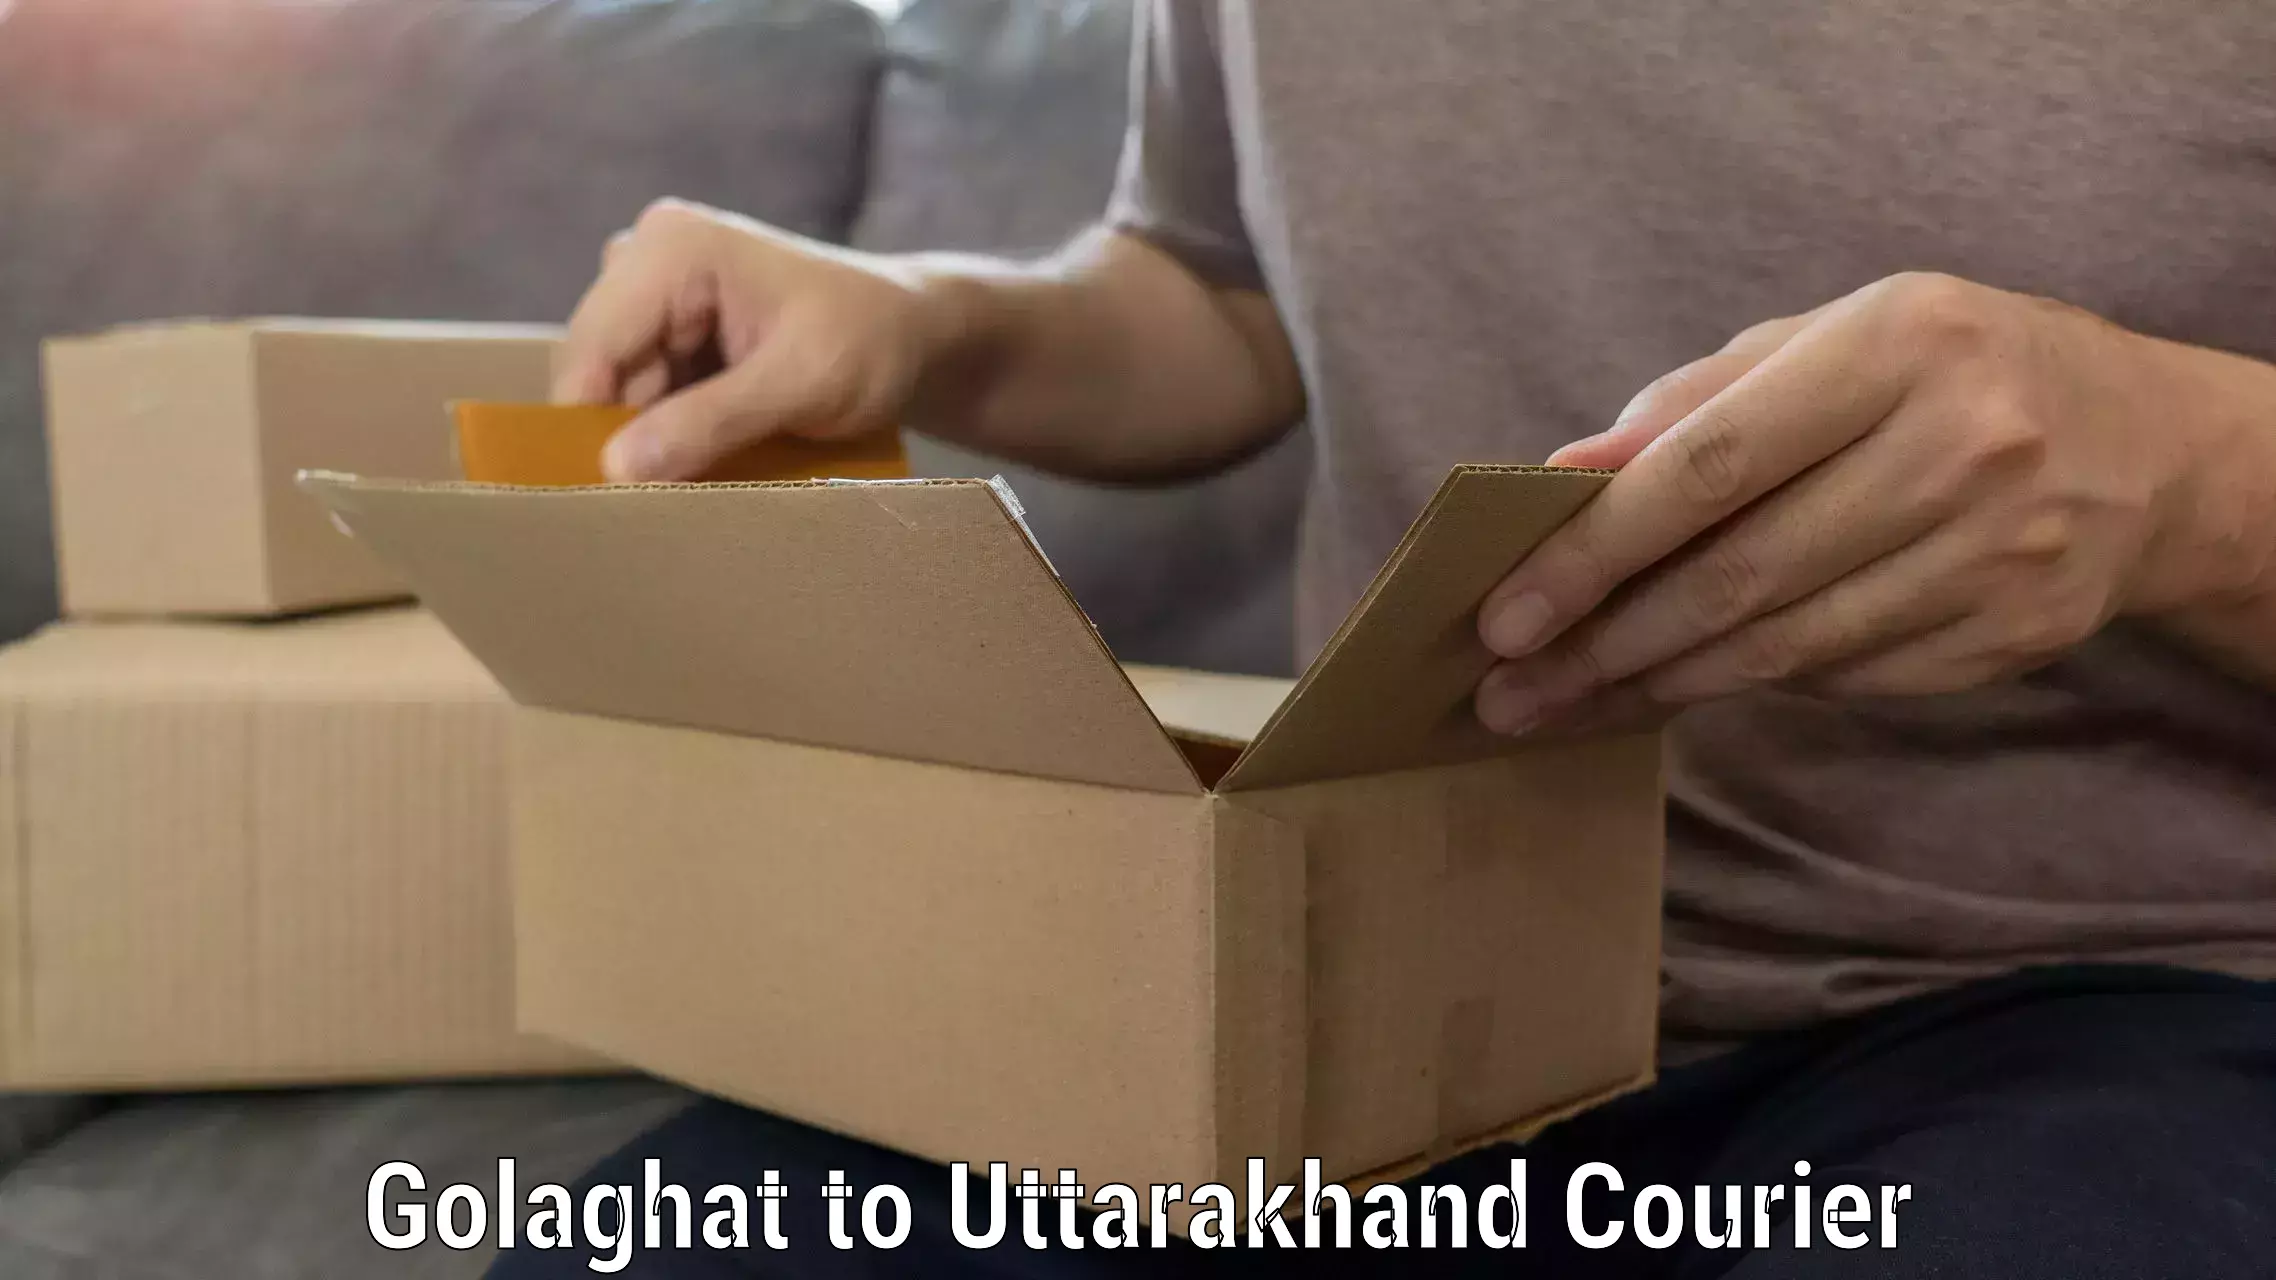 Full-service movers Golaghat to Uttarakhand